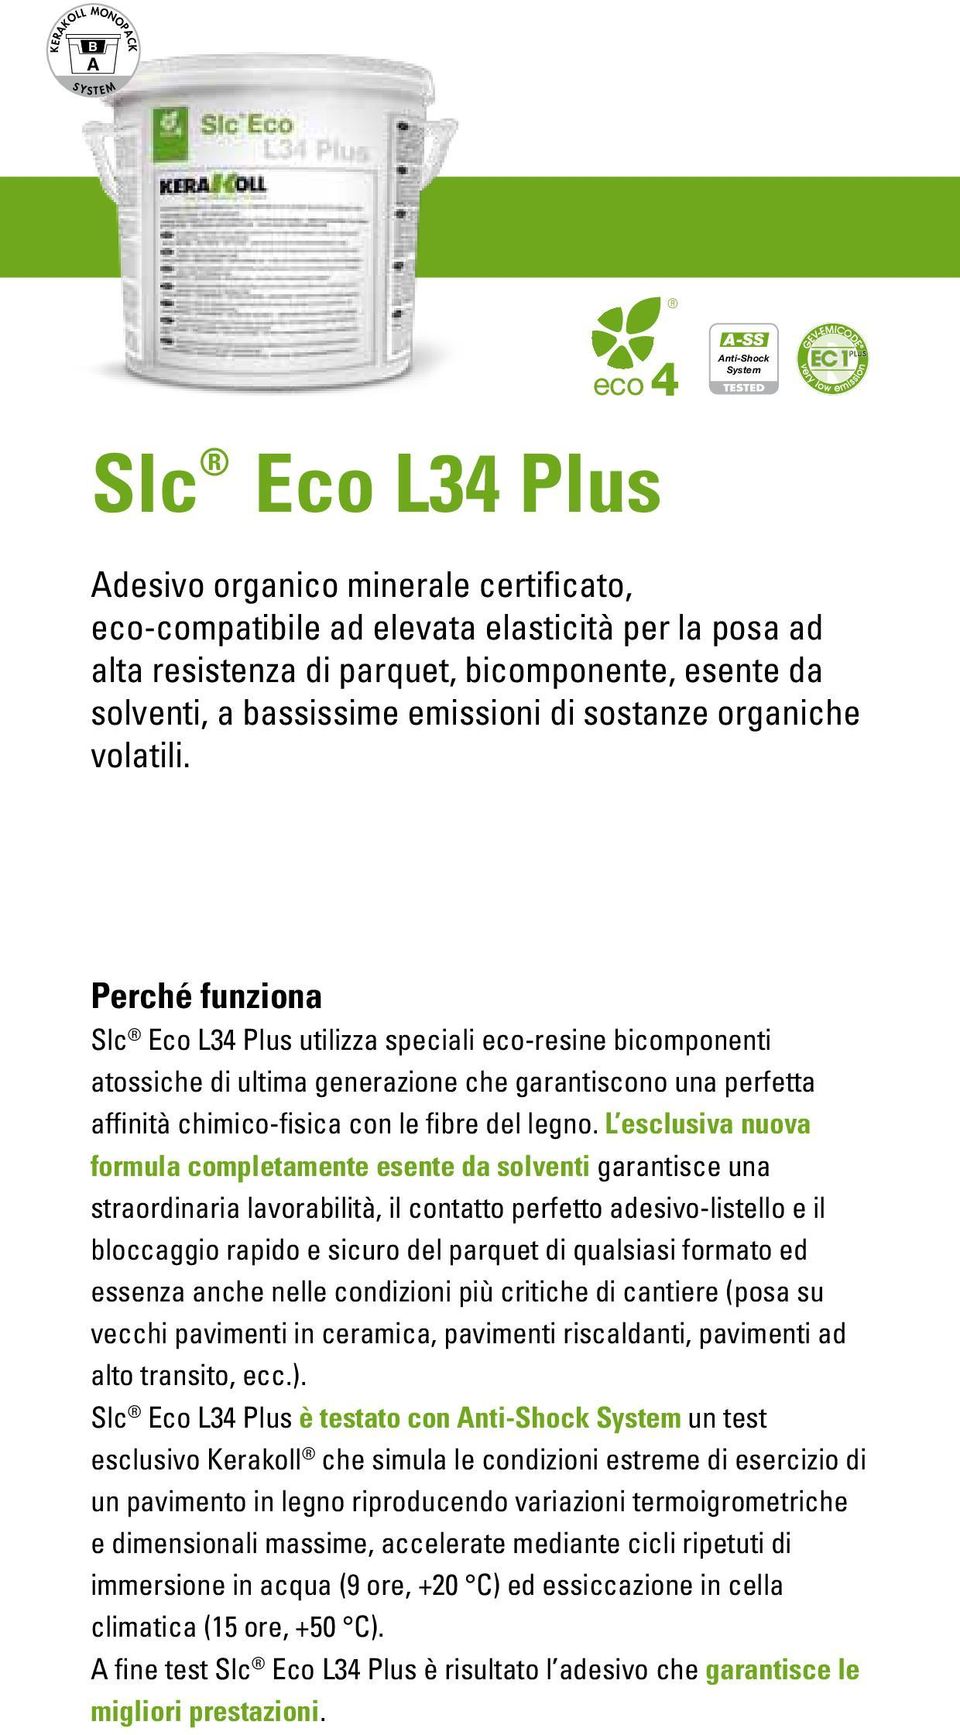 Perché funziona Slc Eco L34 Plus utilizza speciali eco-resine bicomponenti atossiche di ultima generazione che garantiscono una perfetta affinità chimico-fisica con le fibre del legno.